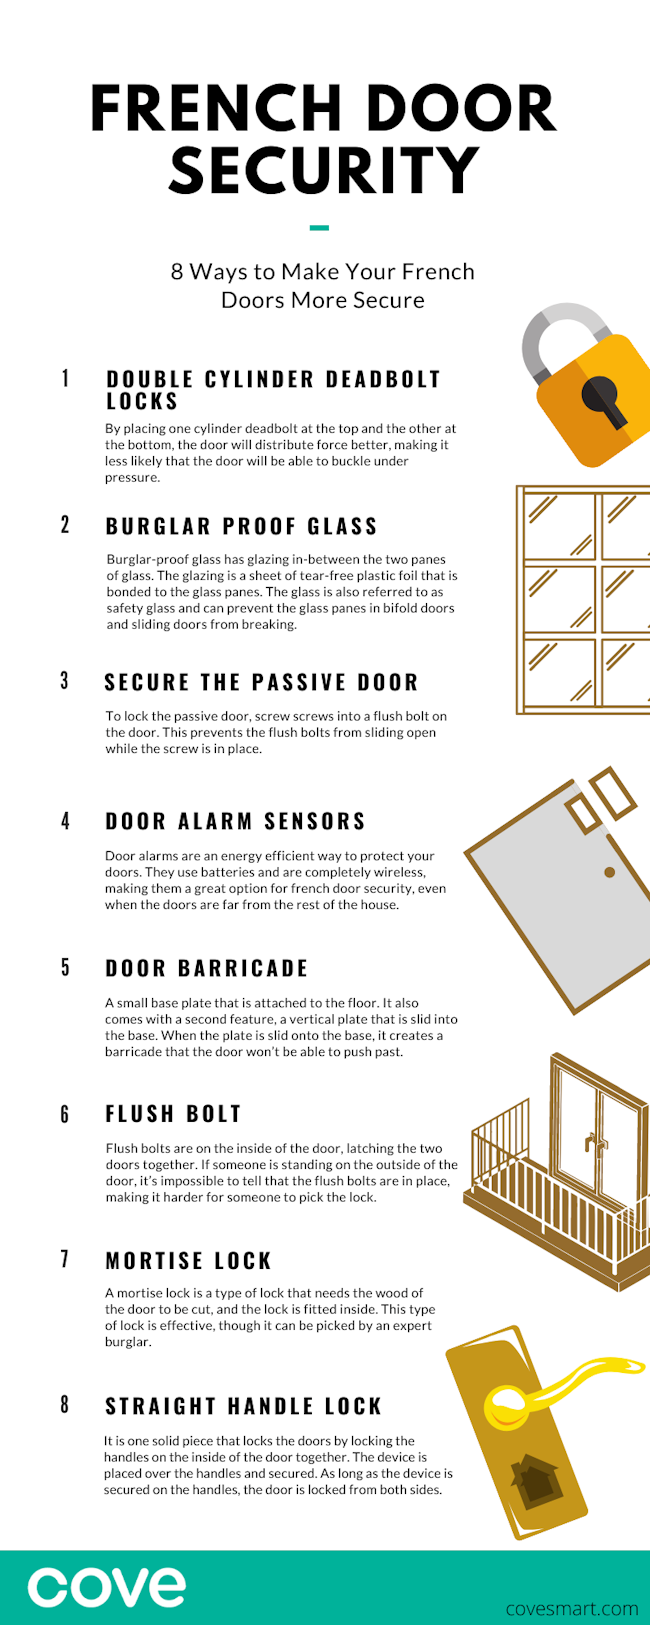 French Door Security Infographic: Secure your door with deadbolt locks, burglar proof glass, alarm sensors, etc. 